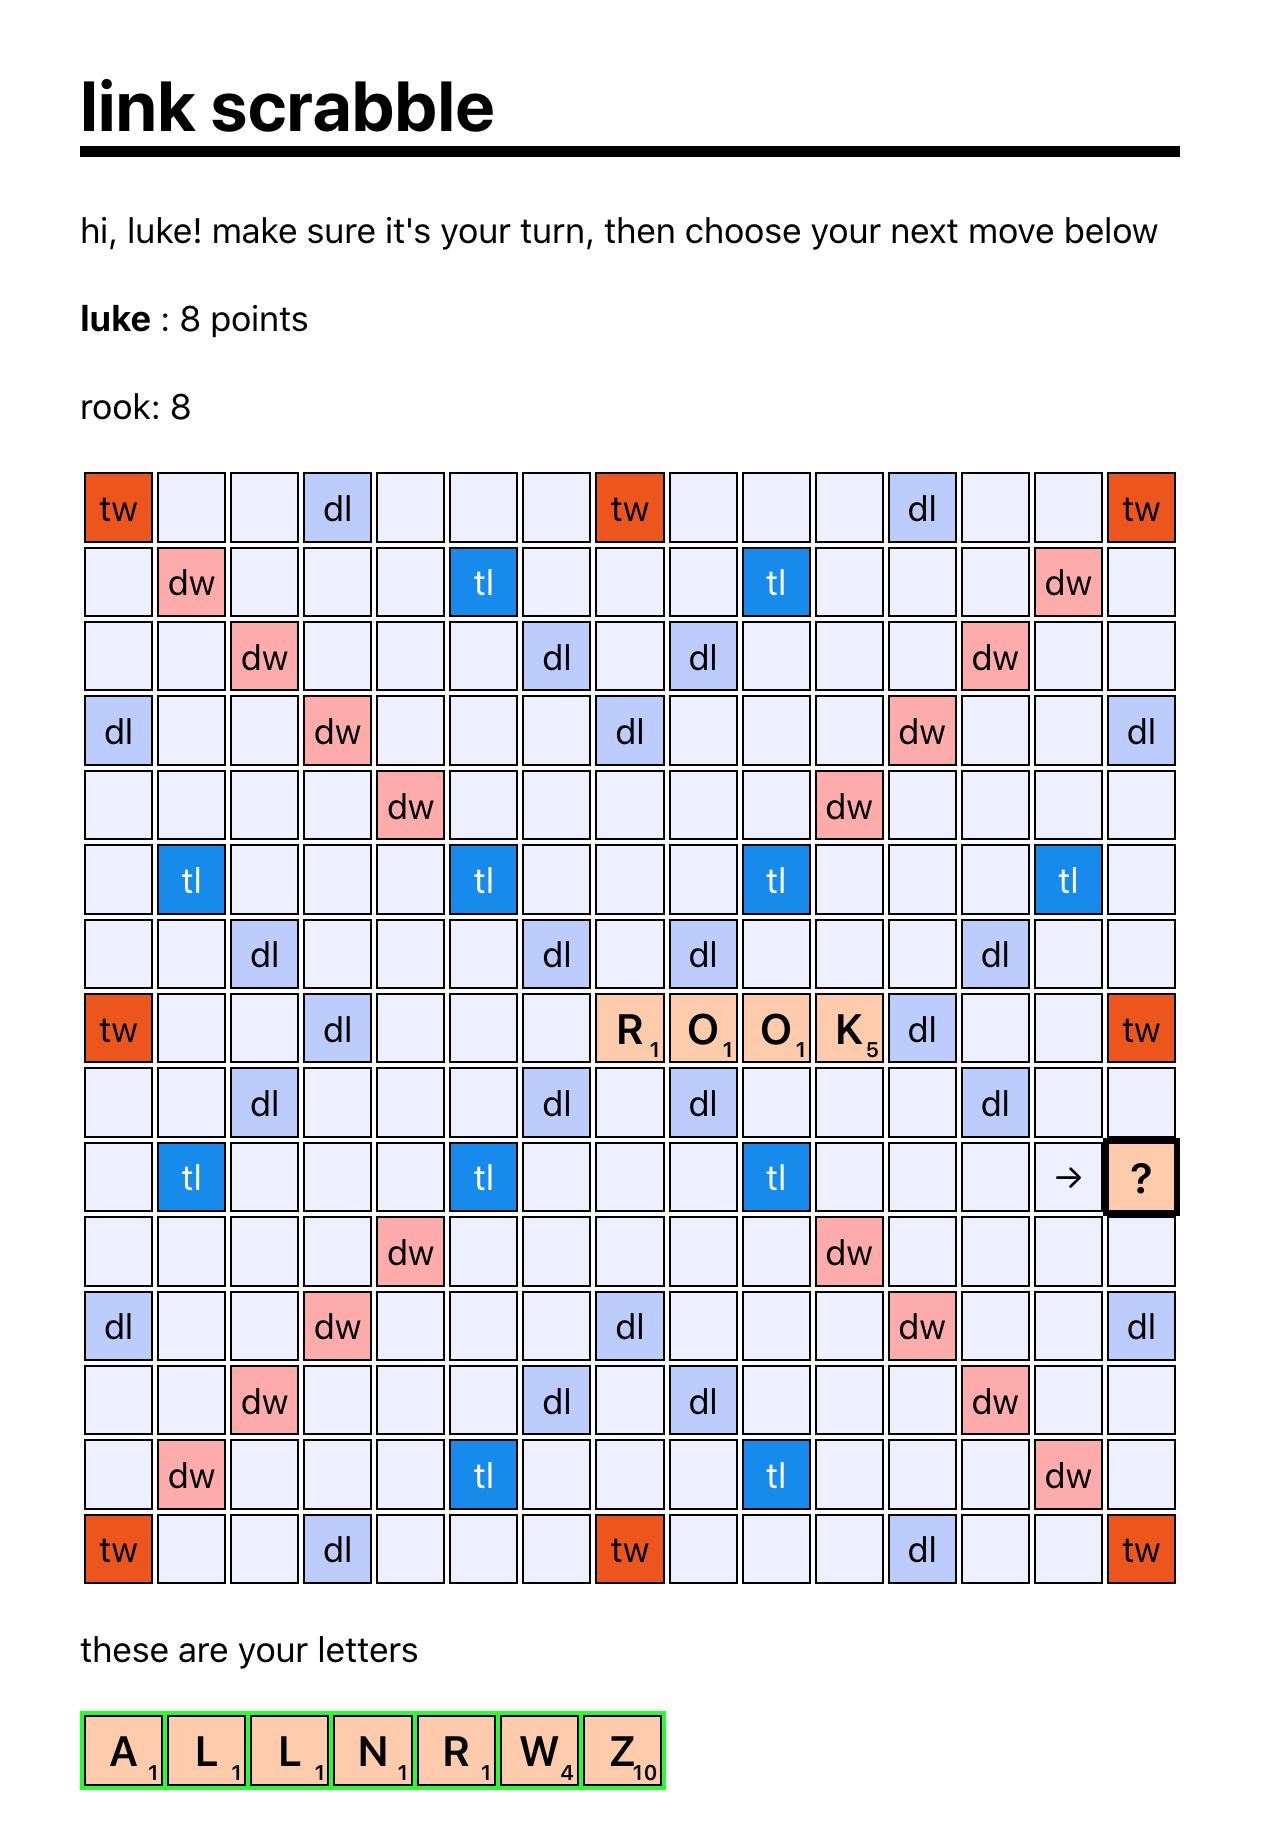 A screenshot of Link Scrabble